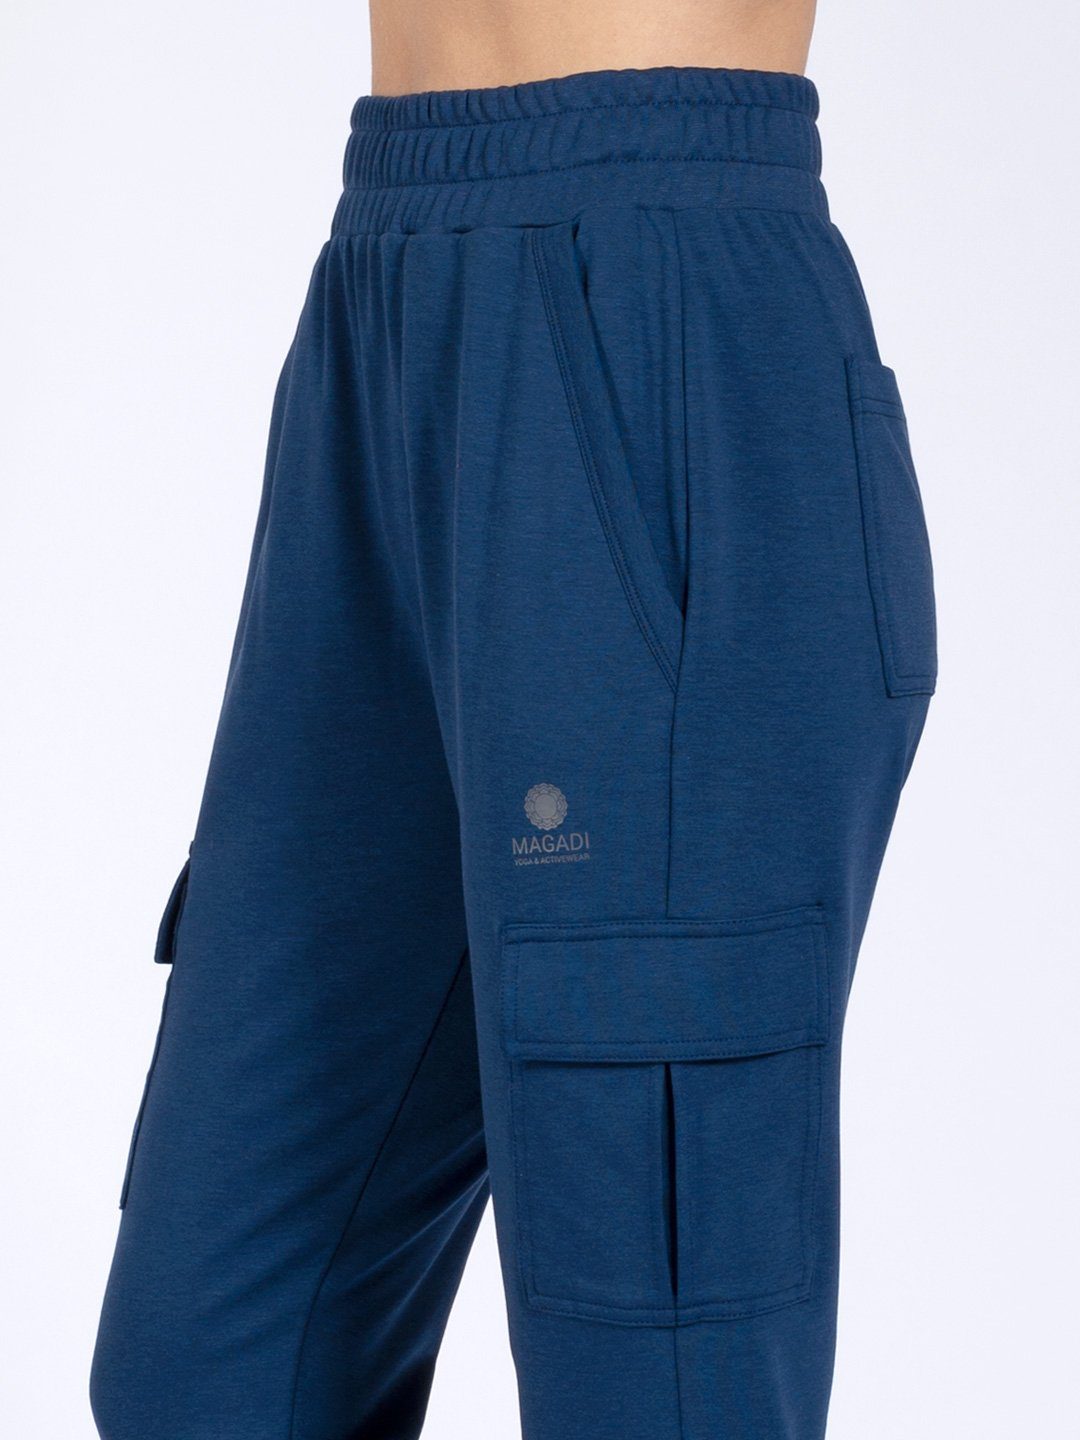 Naturmaterial mit hautsympathischem Yogahose Cargotaschen Lucy blau Magadi aus